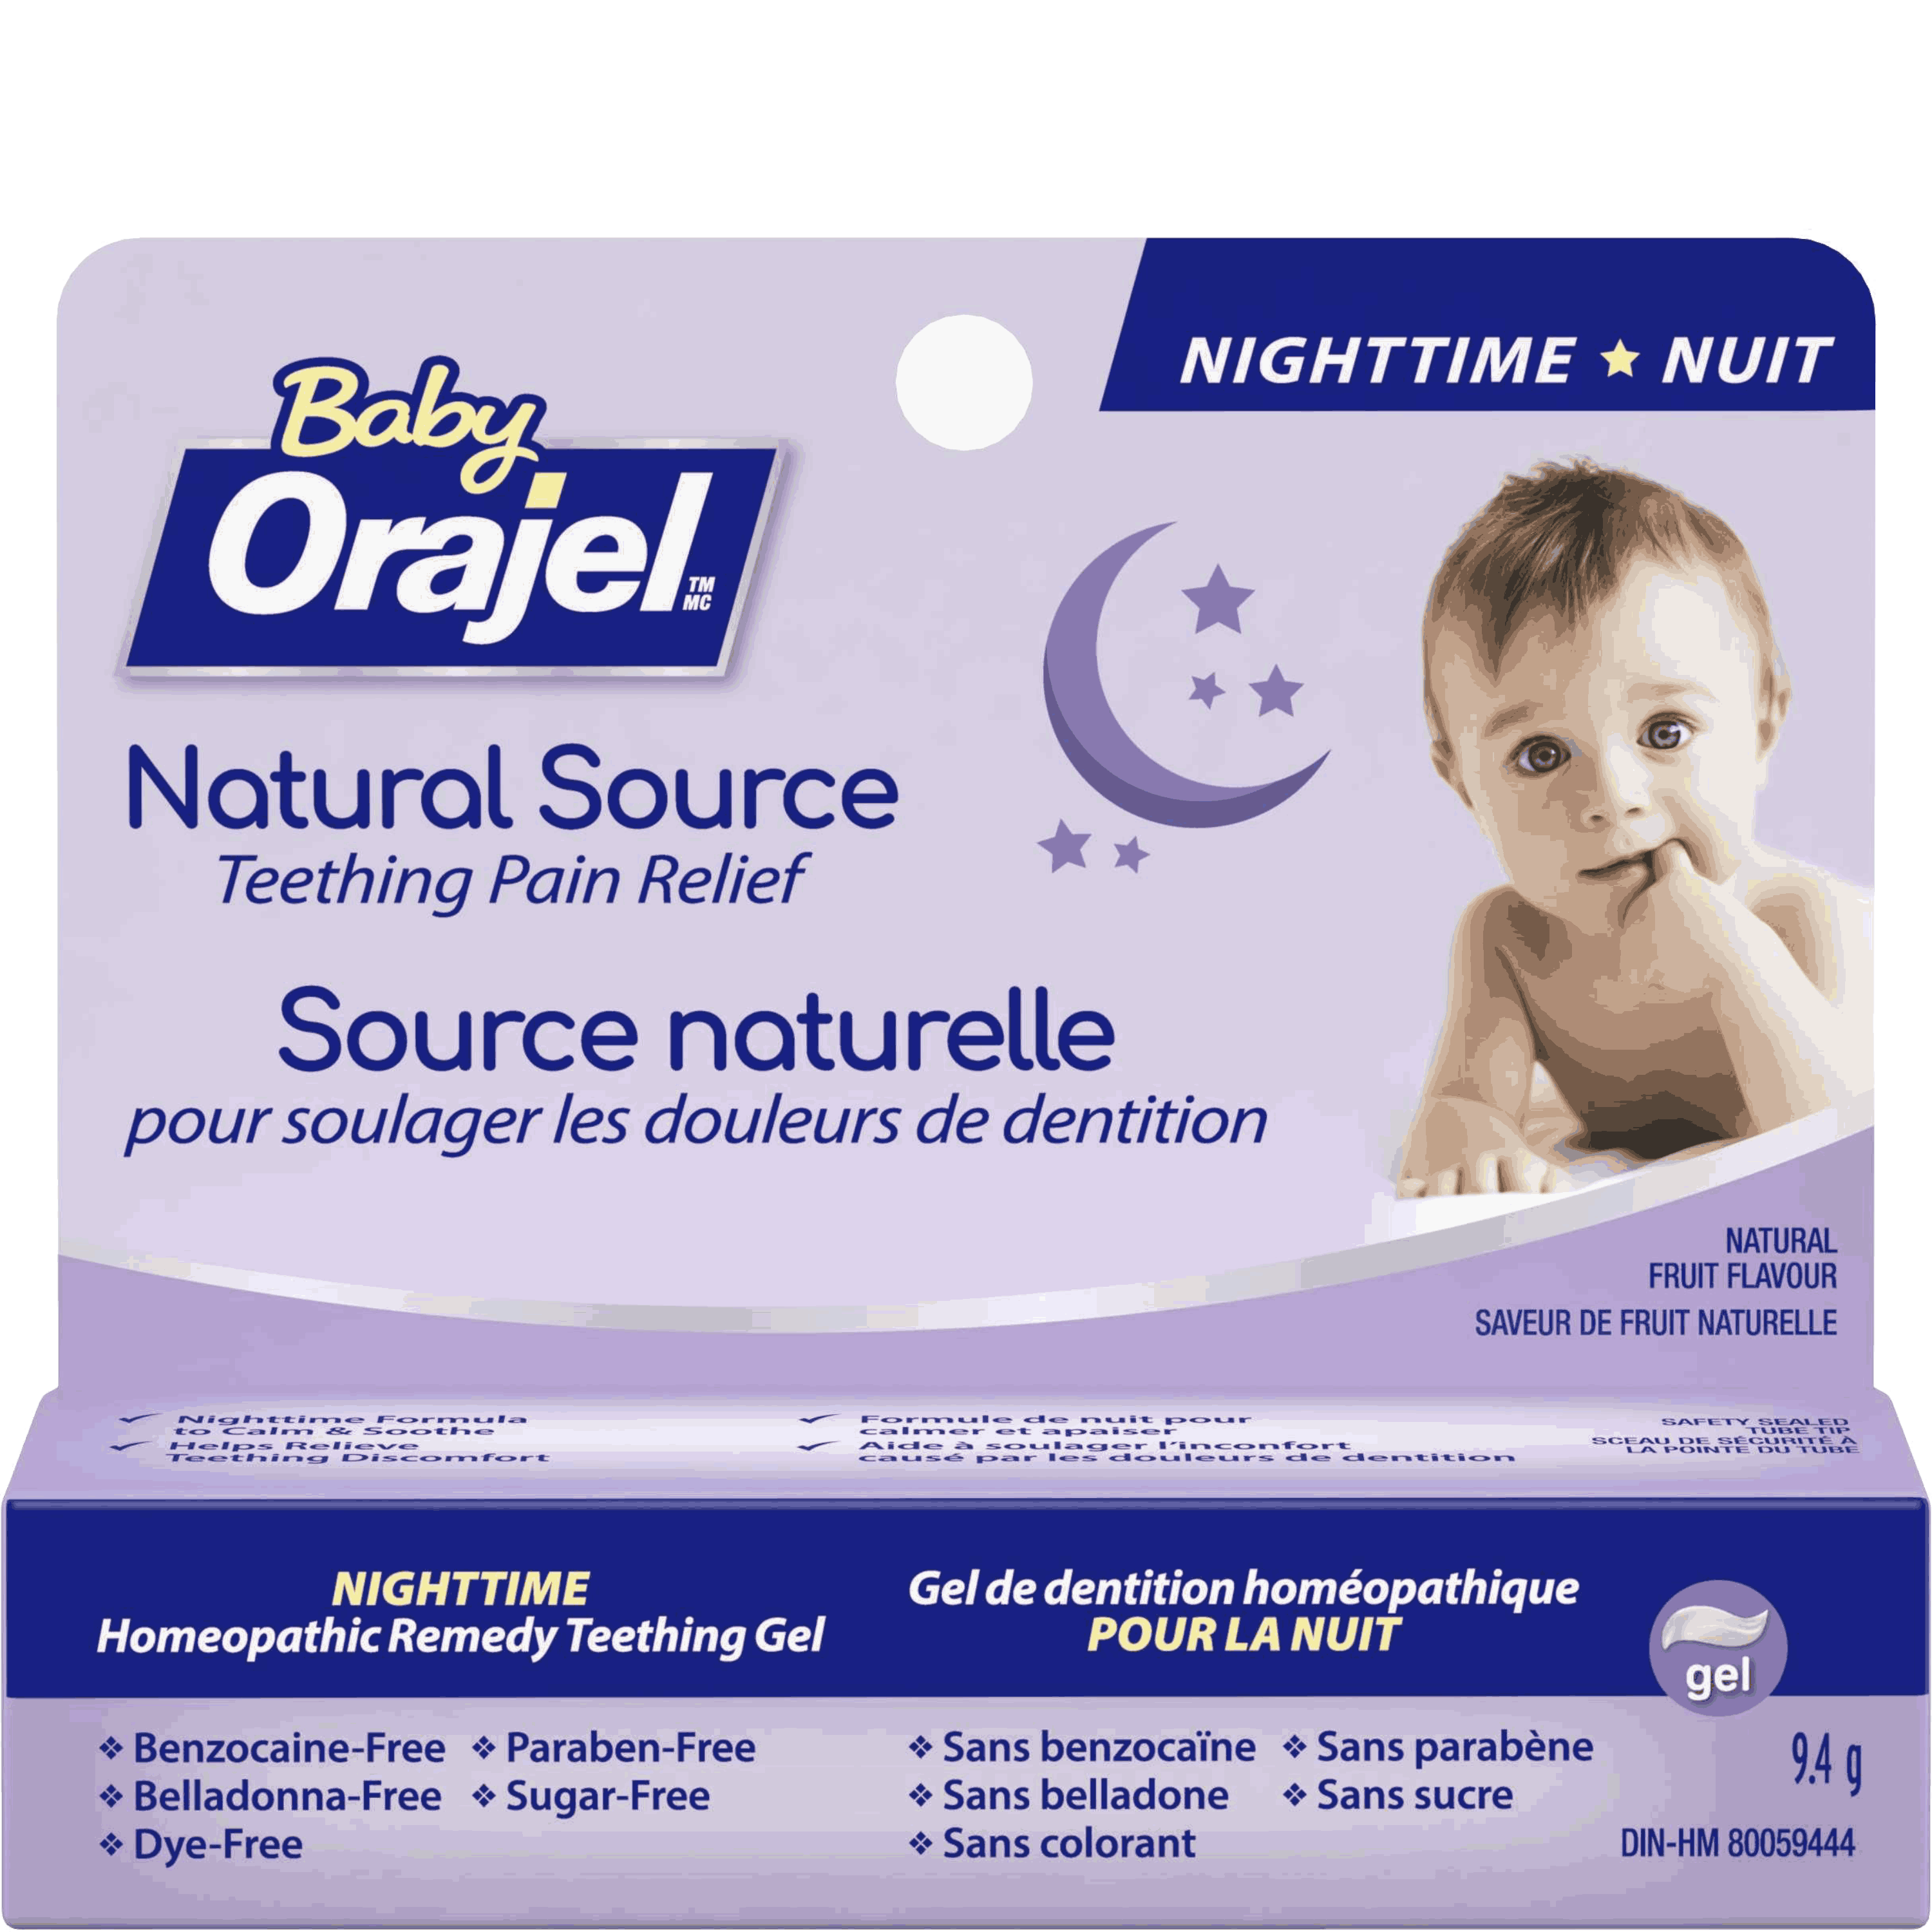 Gel homéopathique d'origine naturelle formule de nuit Baby Orajel